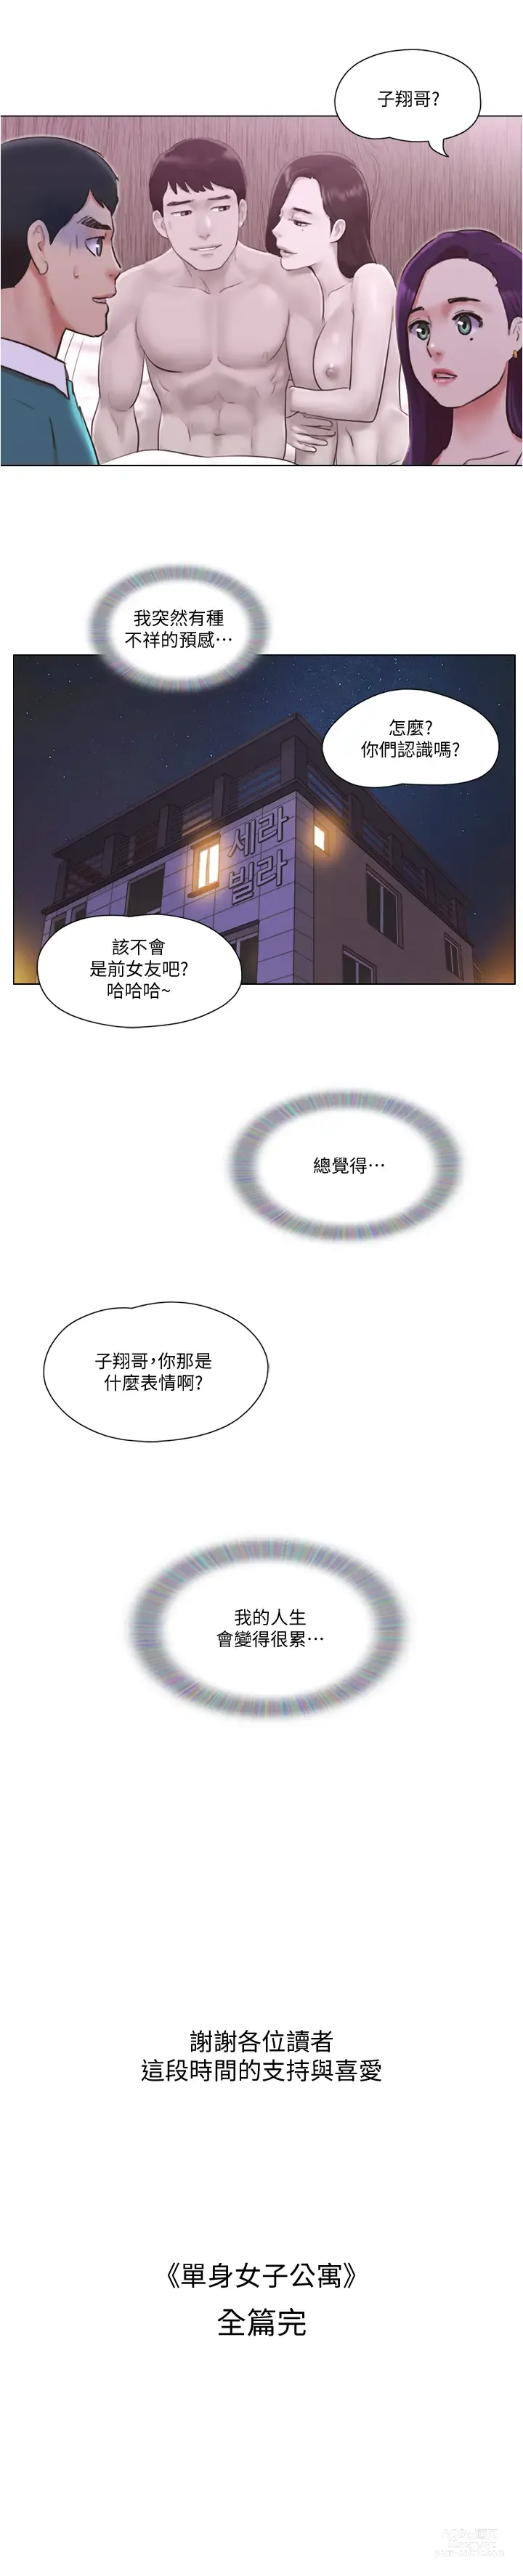 Page 1026 of manga 單身女子公寓 1-41 END